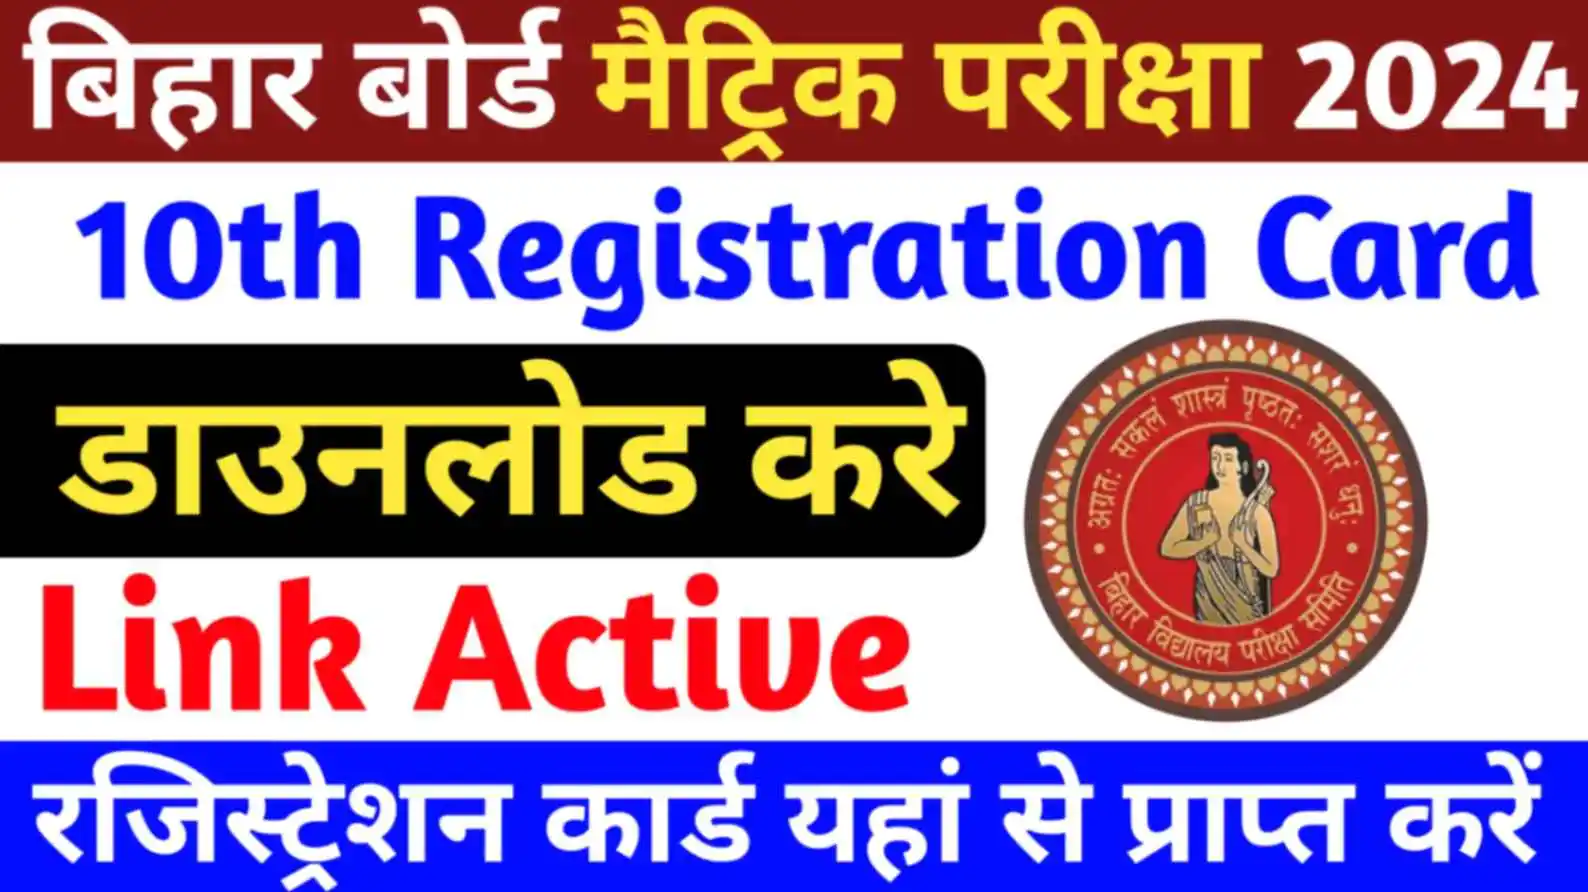 Bihar Board Class 10th Registration Card 2024